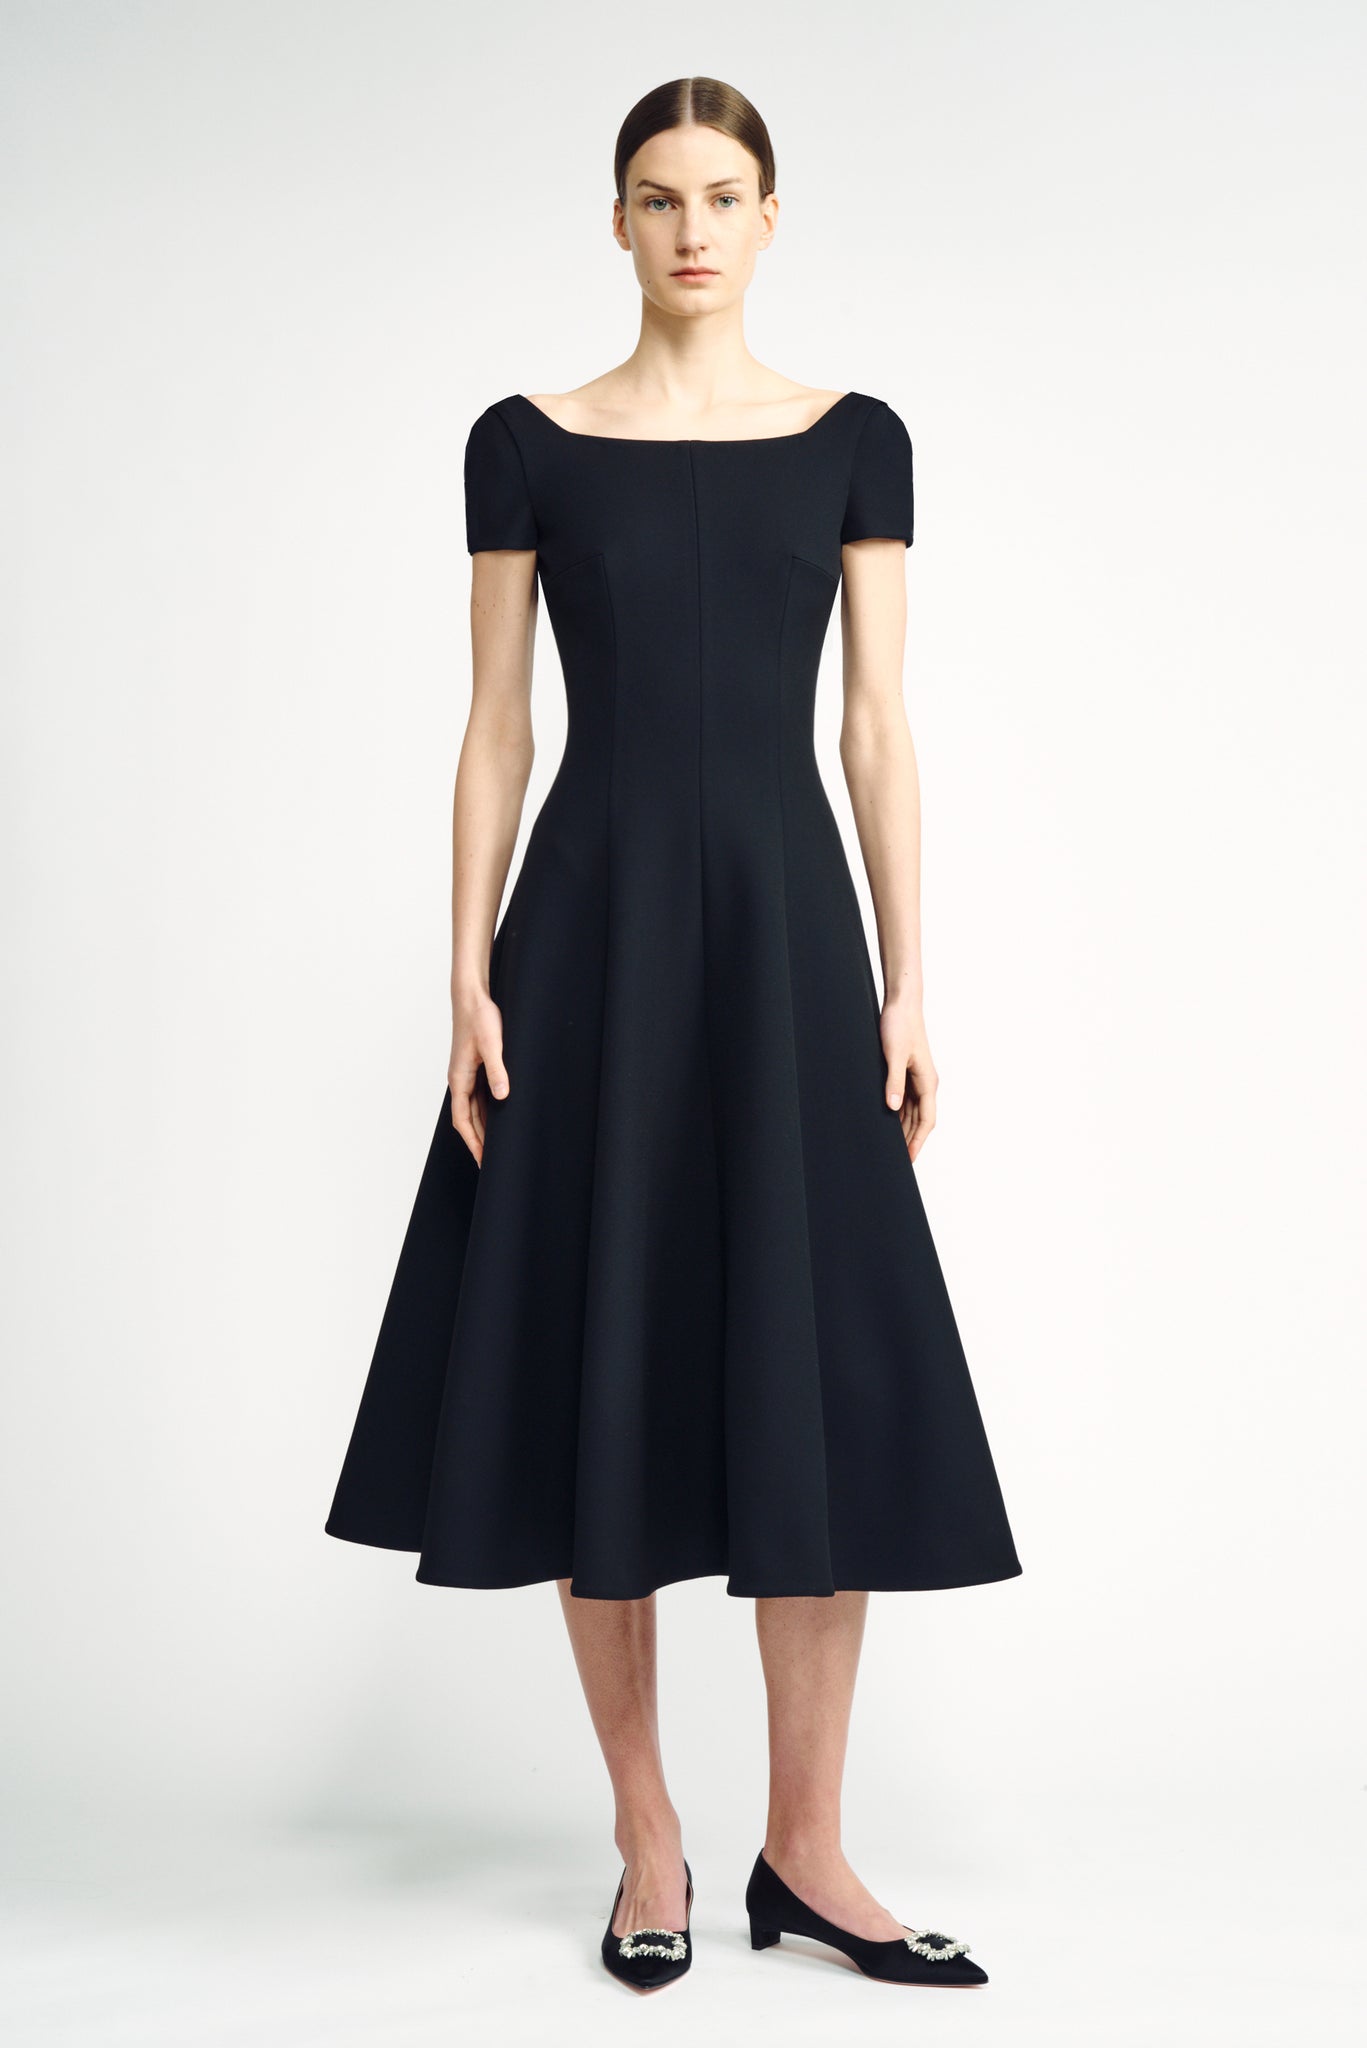 Marielle Dress | Black Cap Sleeve Scoop Back Dress | Emilia Wickstead